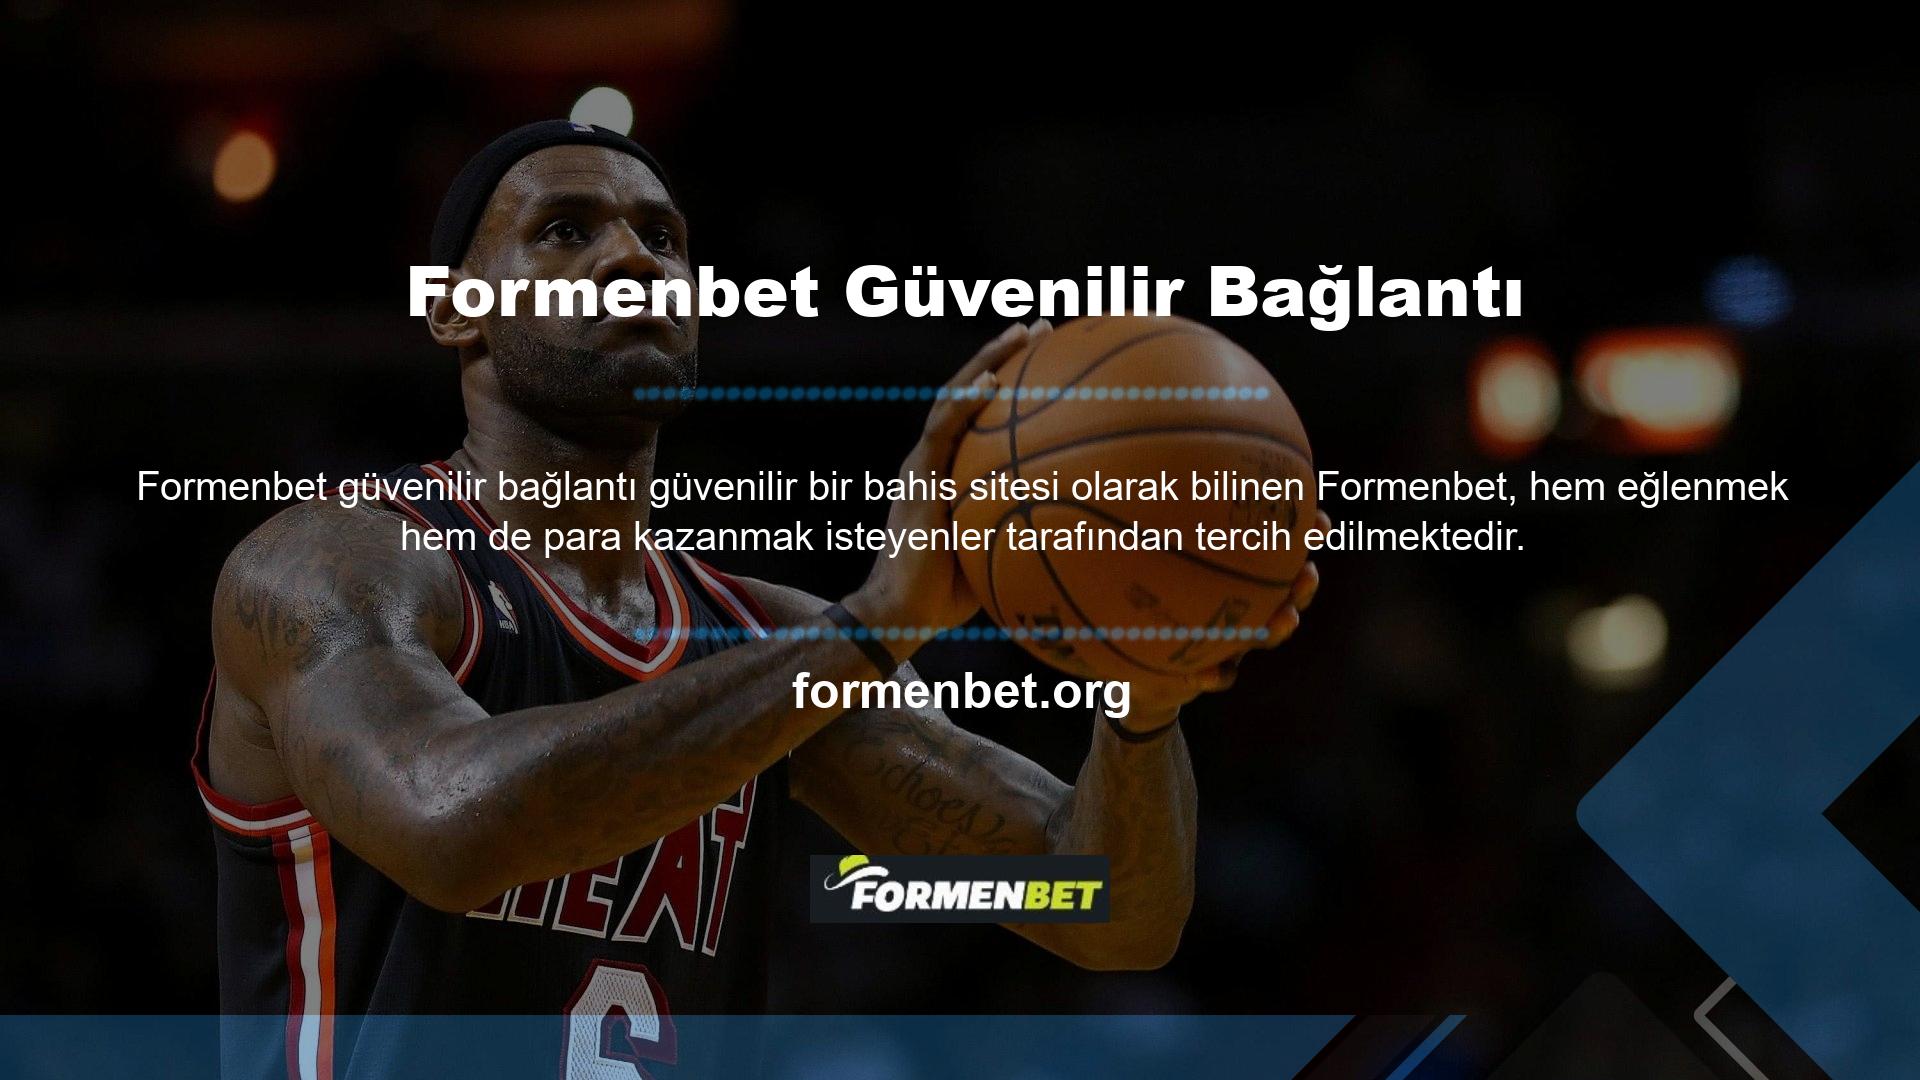 Kullanıcıların para kazanmak istediği bahis sitelerinden biri de Formenbet olarak adlandırılmaktadır